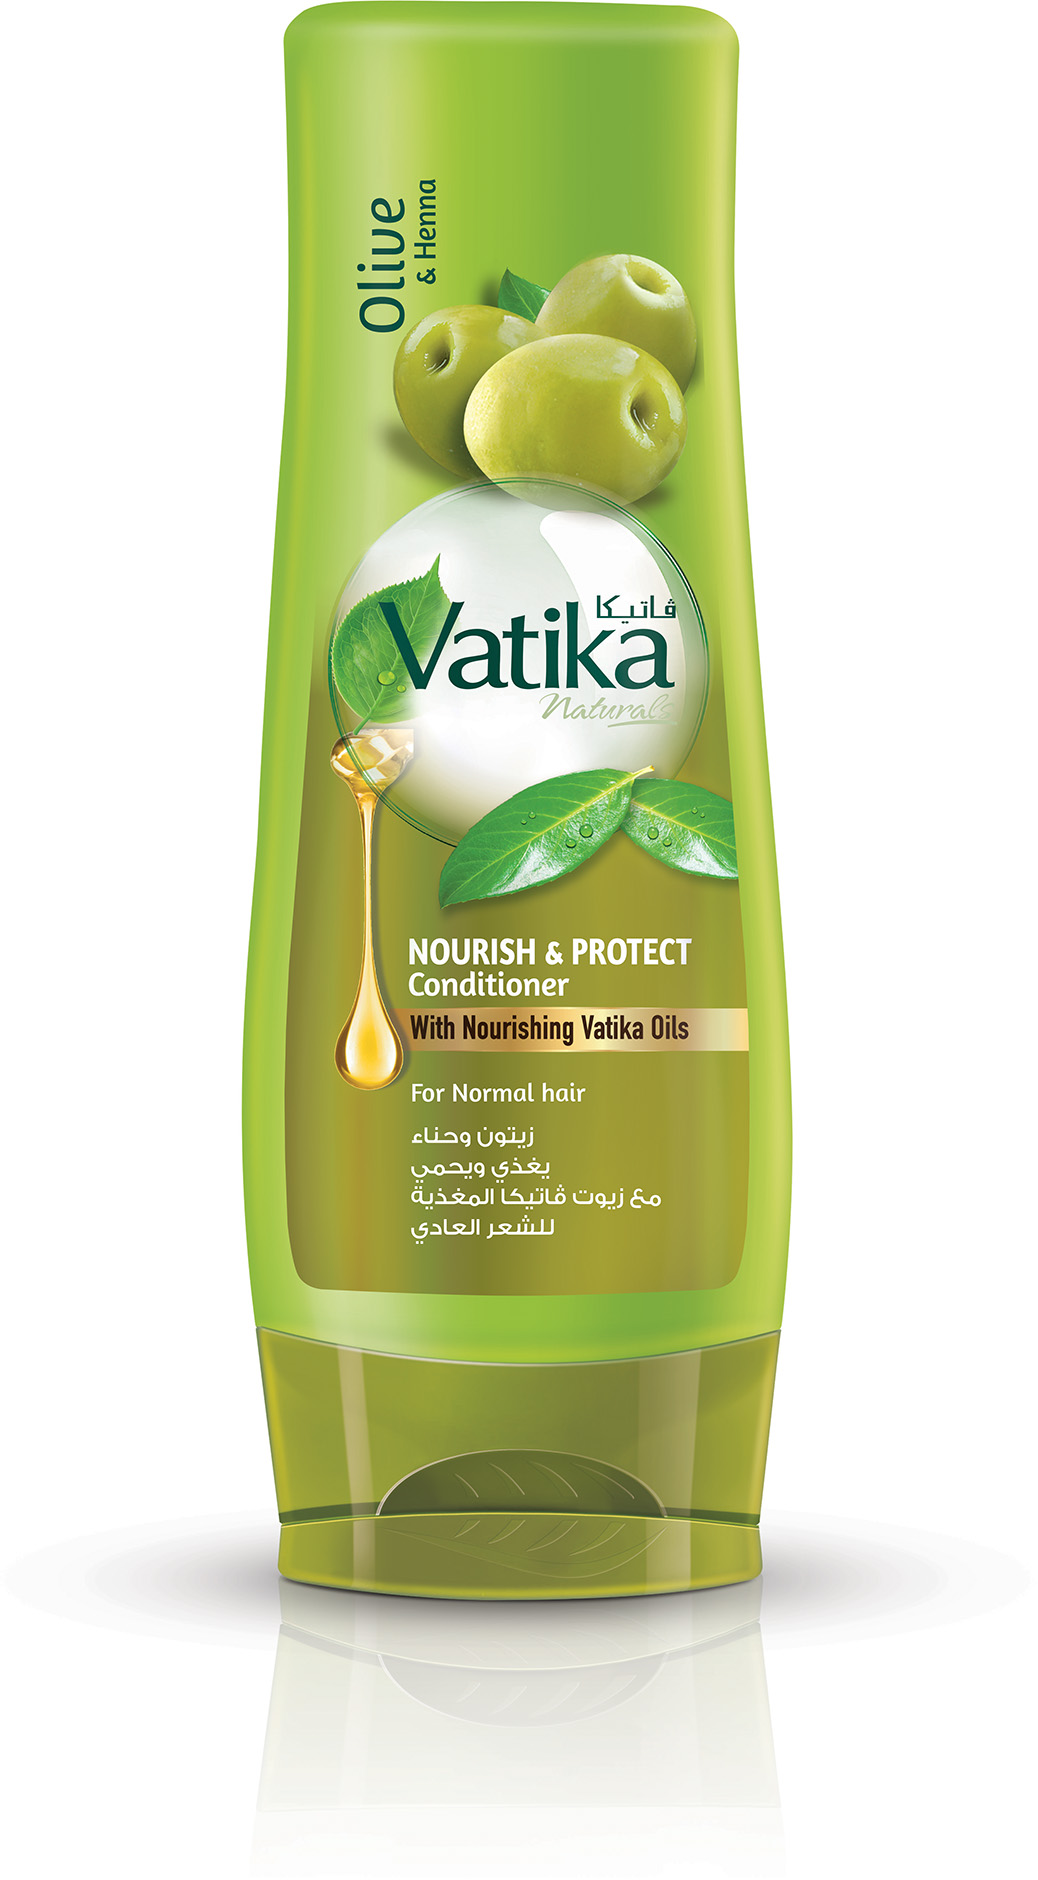 Кондиционер для волос Dabur Vatika Naturals Nourish & Protect - Питание и защита 400 мл чем пополнить наше питание общедоступные беседы об использовании в пищу часто встречающихся диких растений